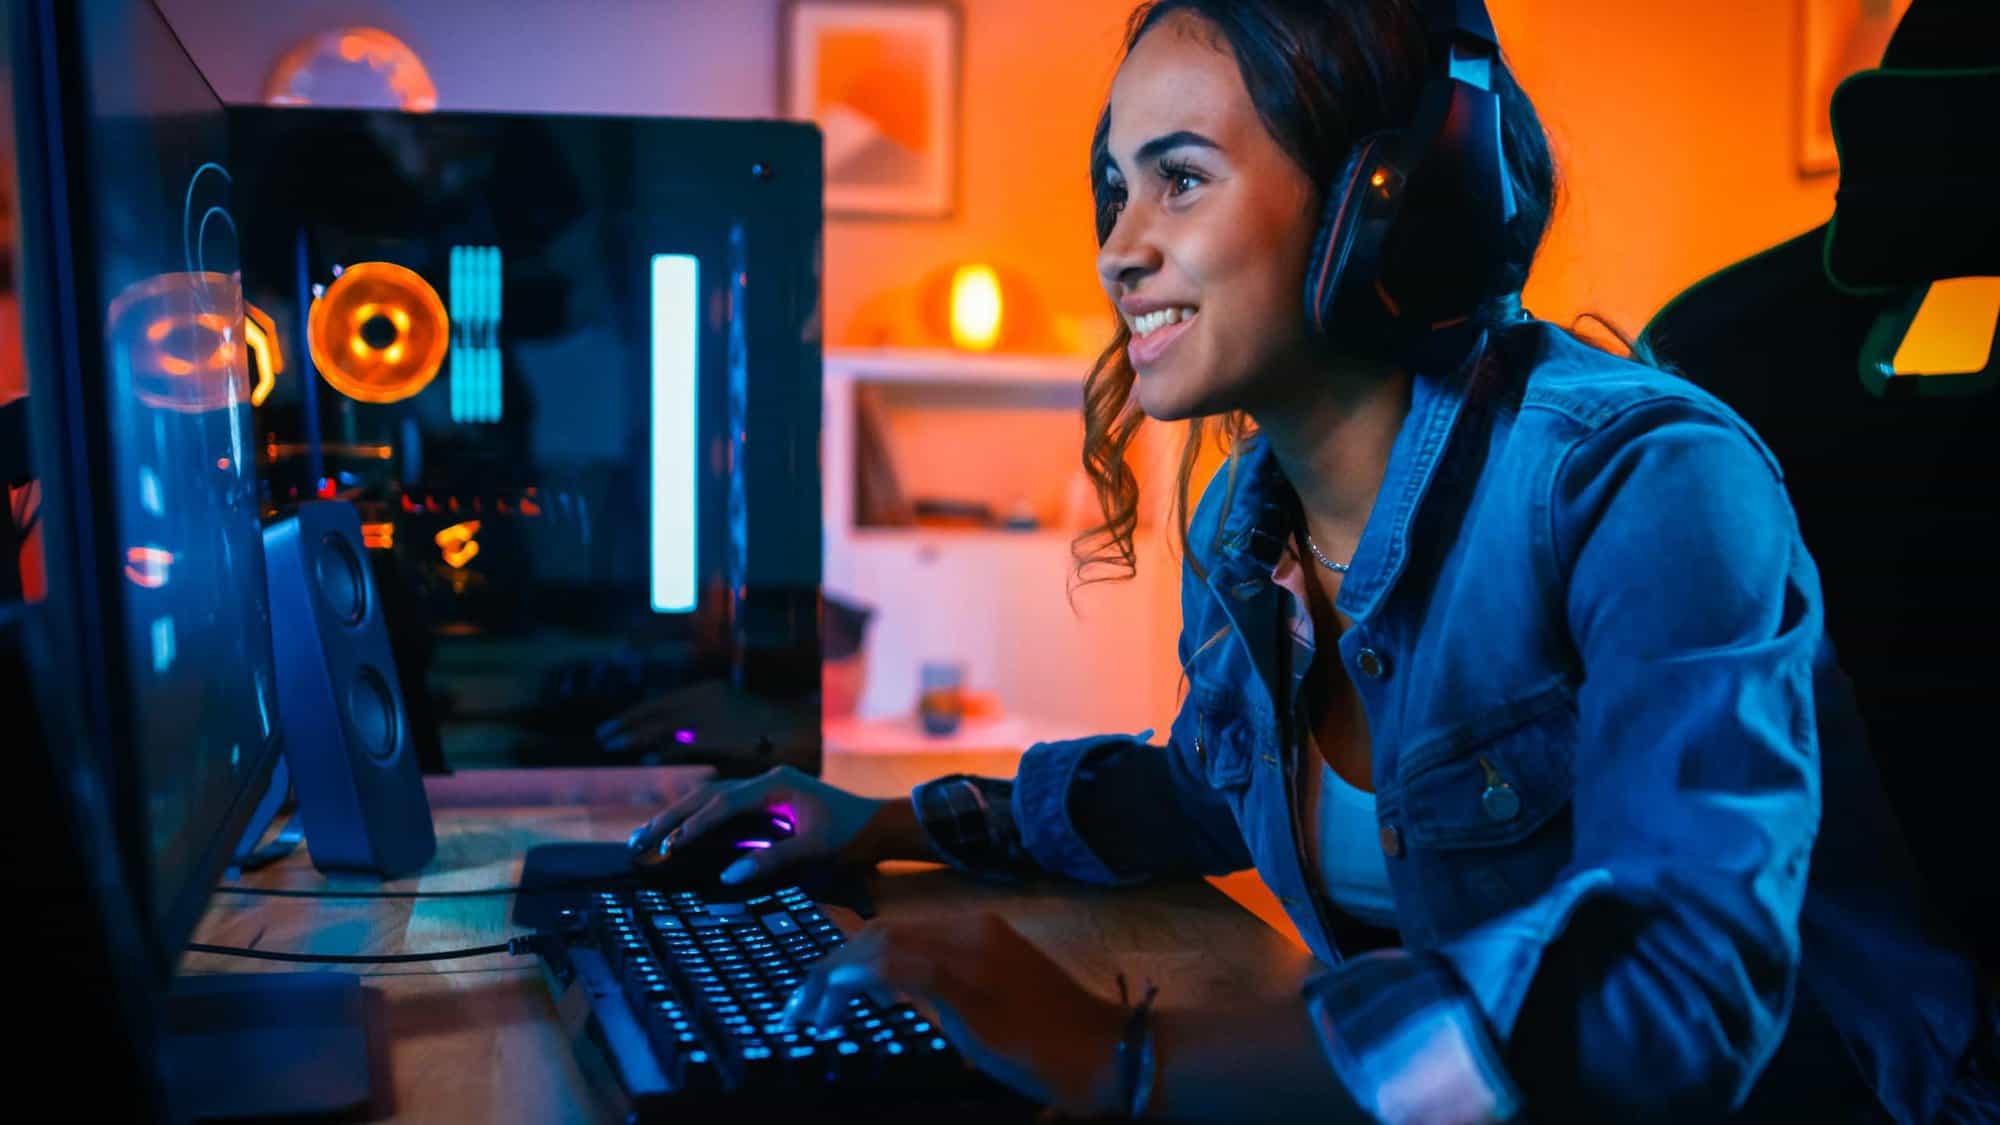 Público gamer de PC é o que mais joga online, segundo pesquisa